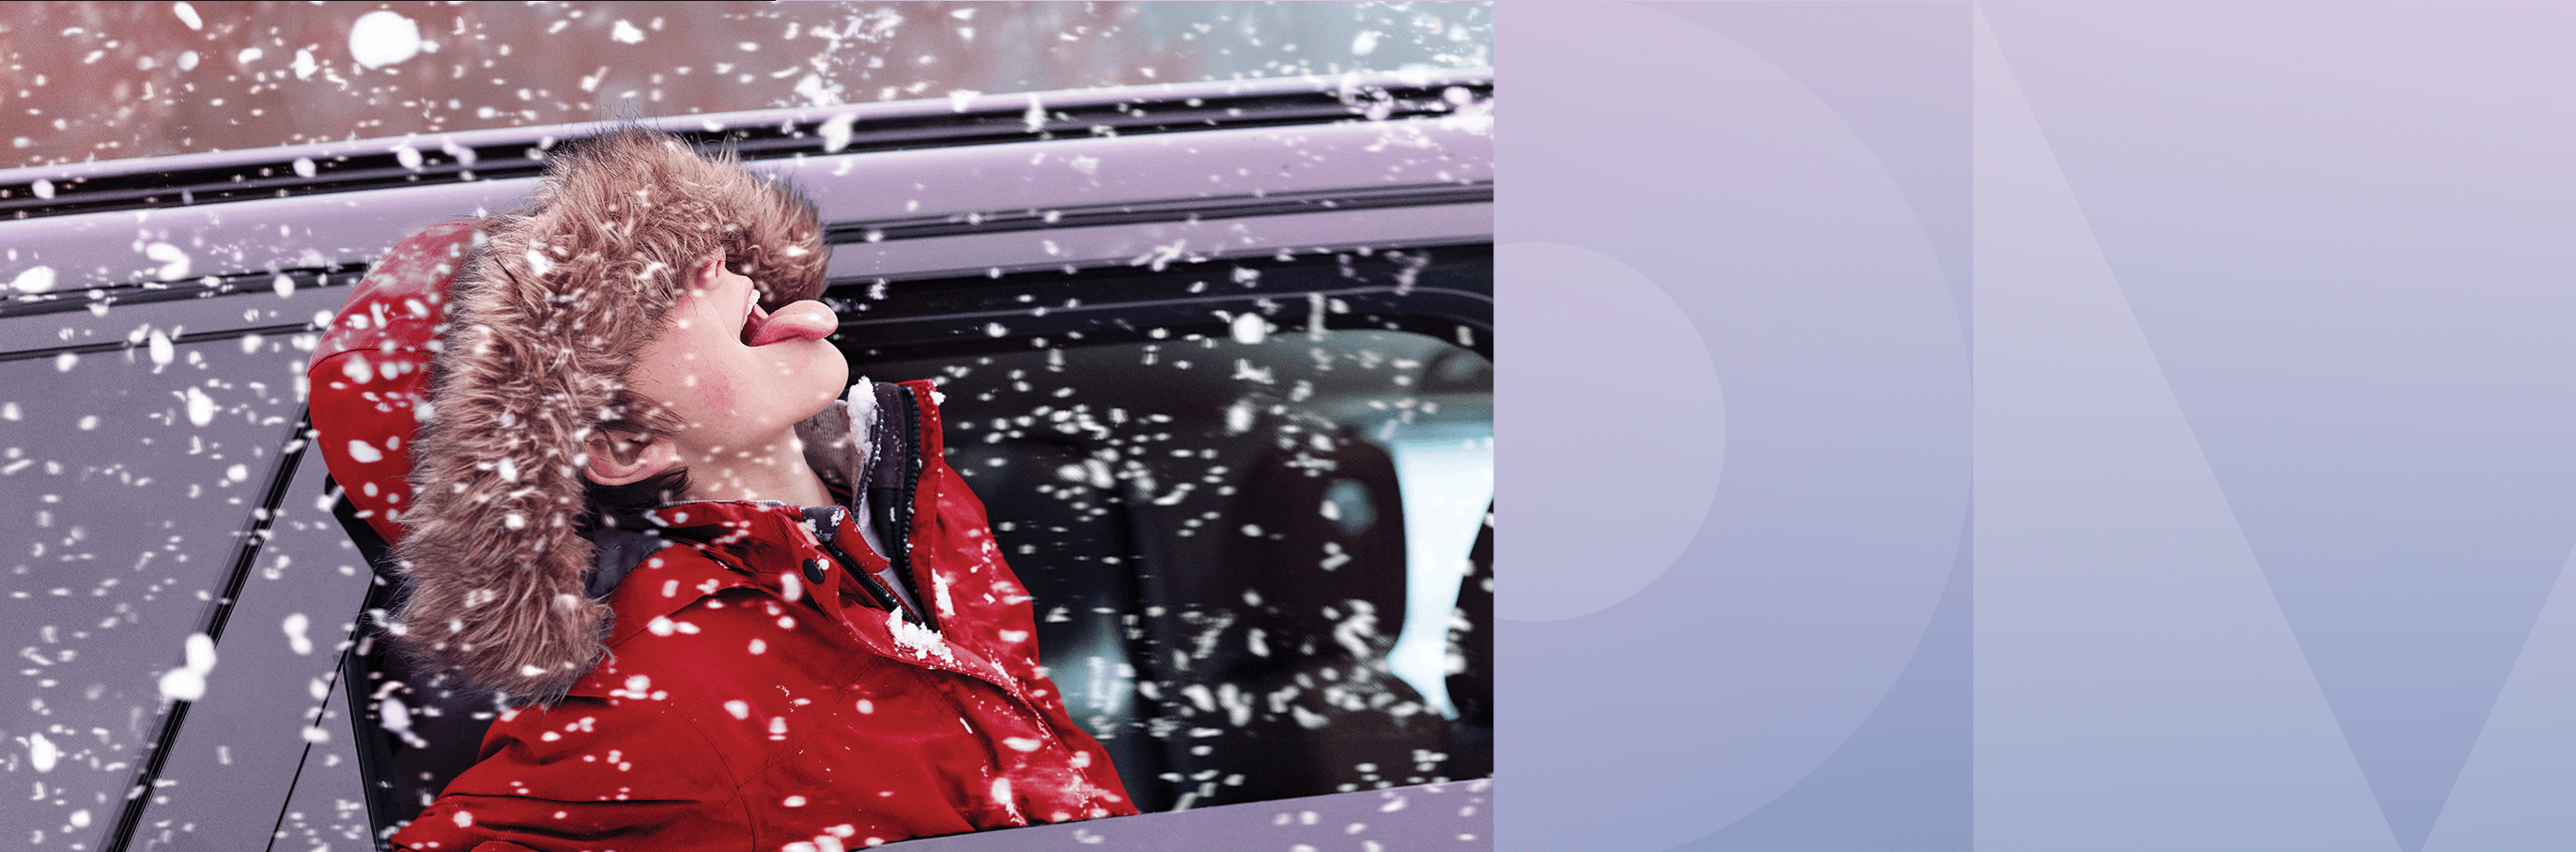 um grande outdoor em um prédio diz “A tecnologia mais inteligente usa a eficiência a favor do meio ambiente” ao lado da foto de uma criança de casaco vermelho e capuz pegando flocos de neve com a língua.